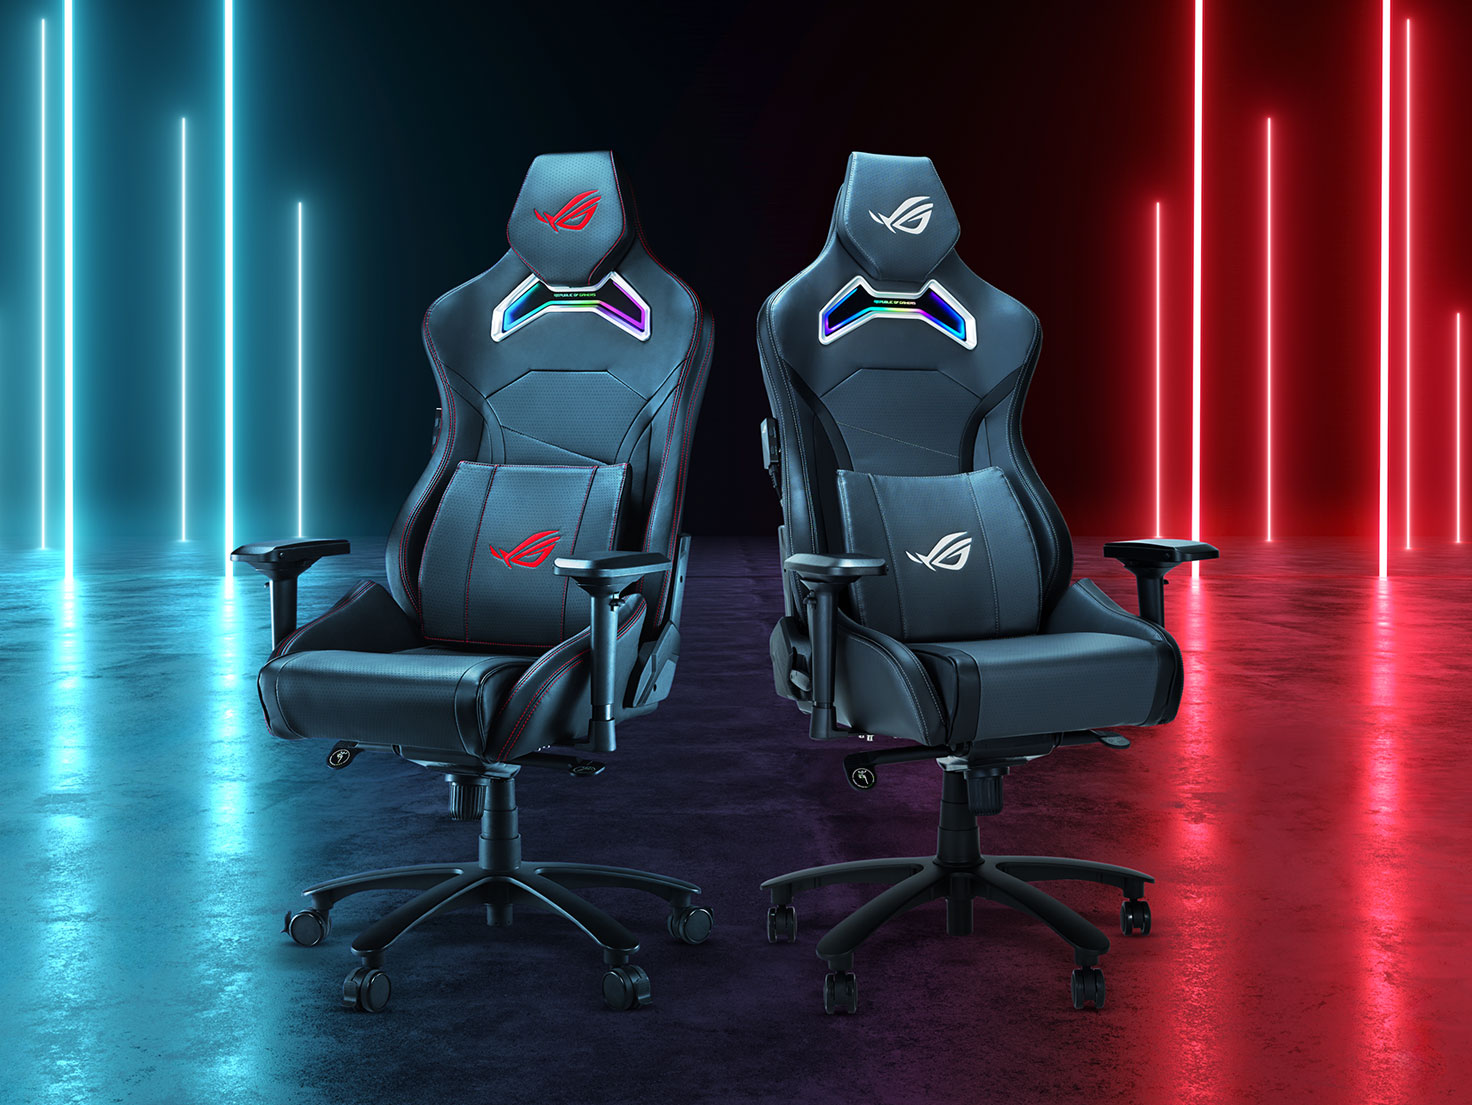 Twee Chariot X gaming-stoelen in zwarte en grijze varianten naast elkaar.